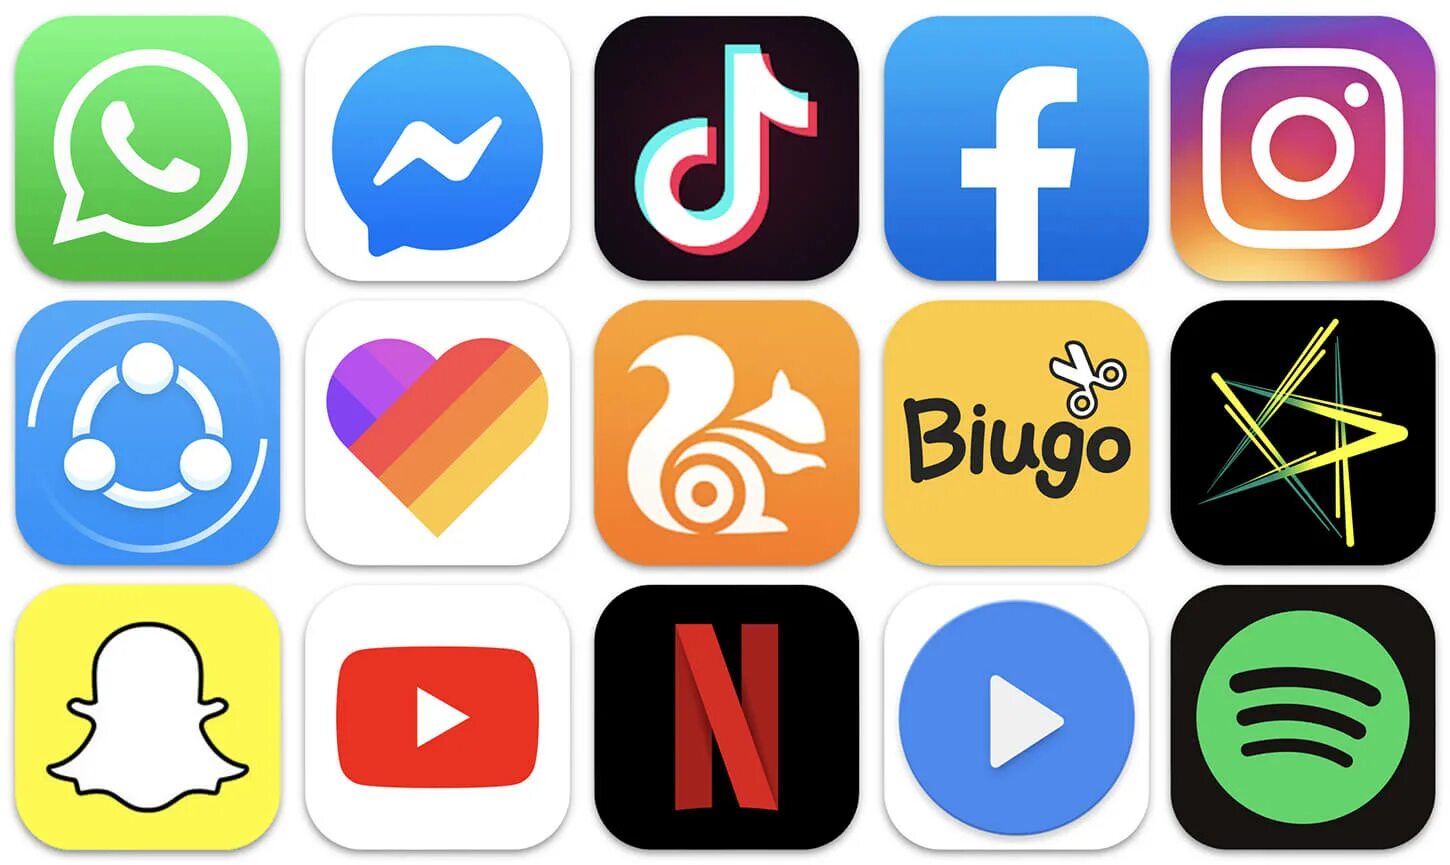 S more app. Логотипы приложений. Иконки для приложений. Логотипы популярных приложений. Значки приложений на телефоне.